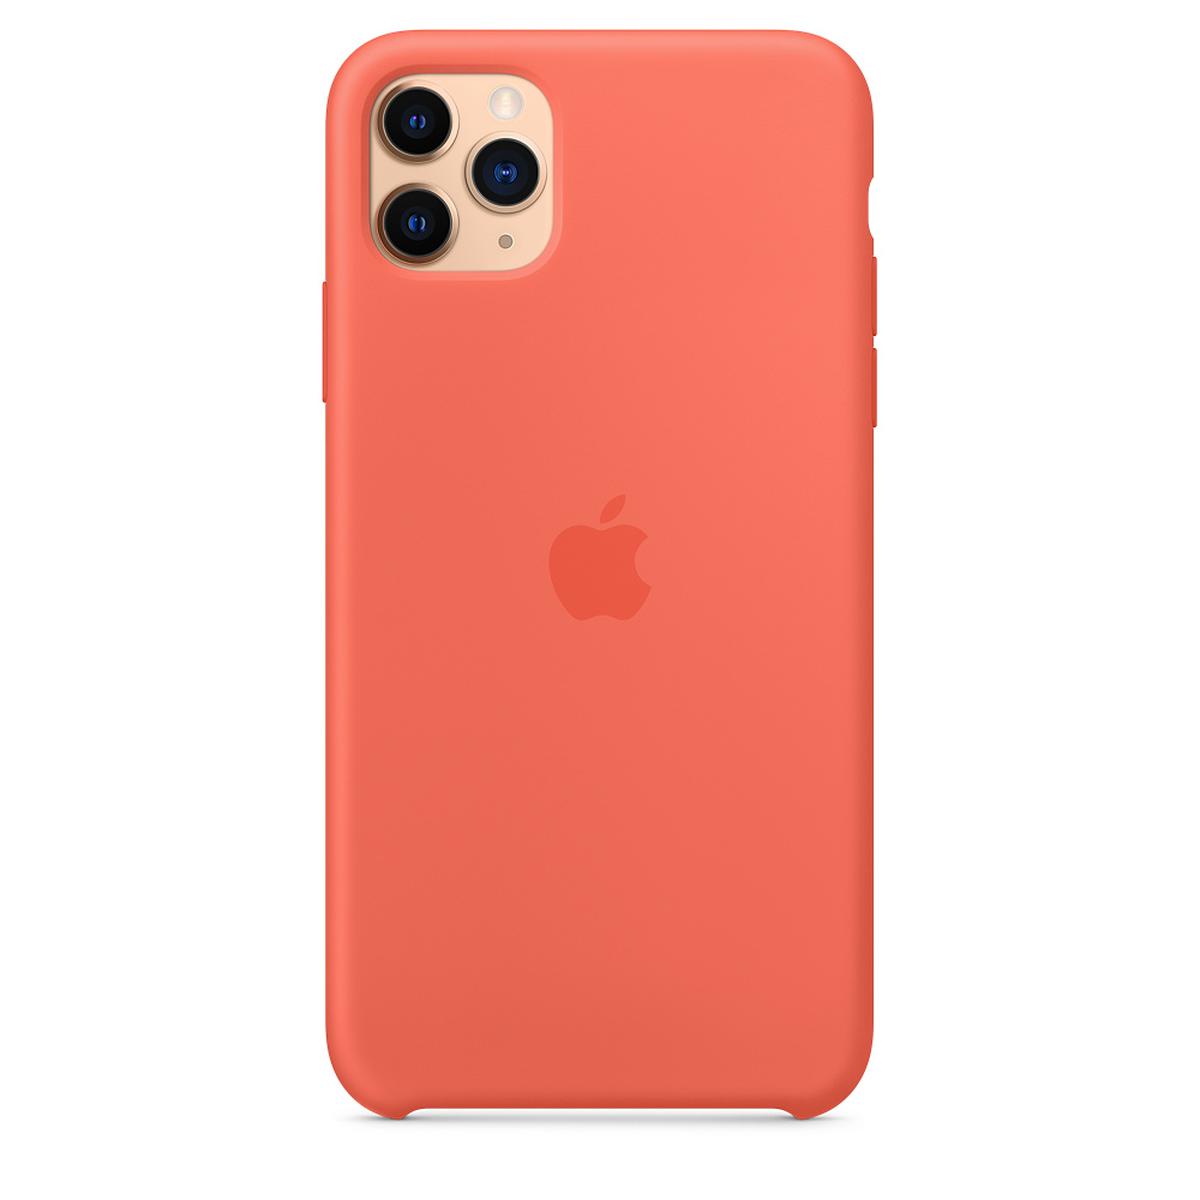 Apple iPhone 11 Pro Max Silikon Kılıf Mandalina Turuncu - MX022ZM/A (Apple Türkiye Garantili) resmi